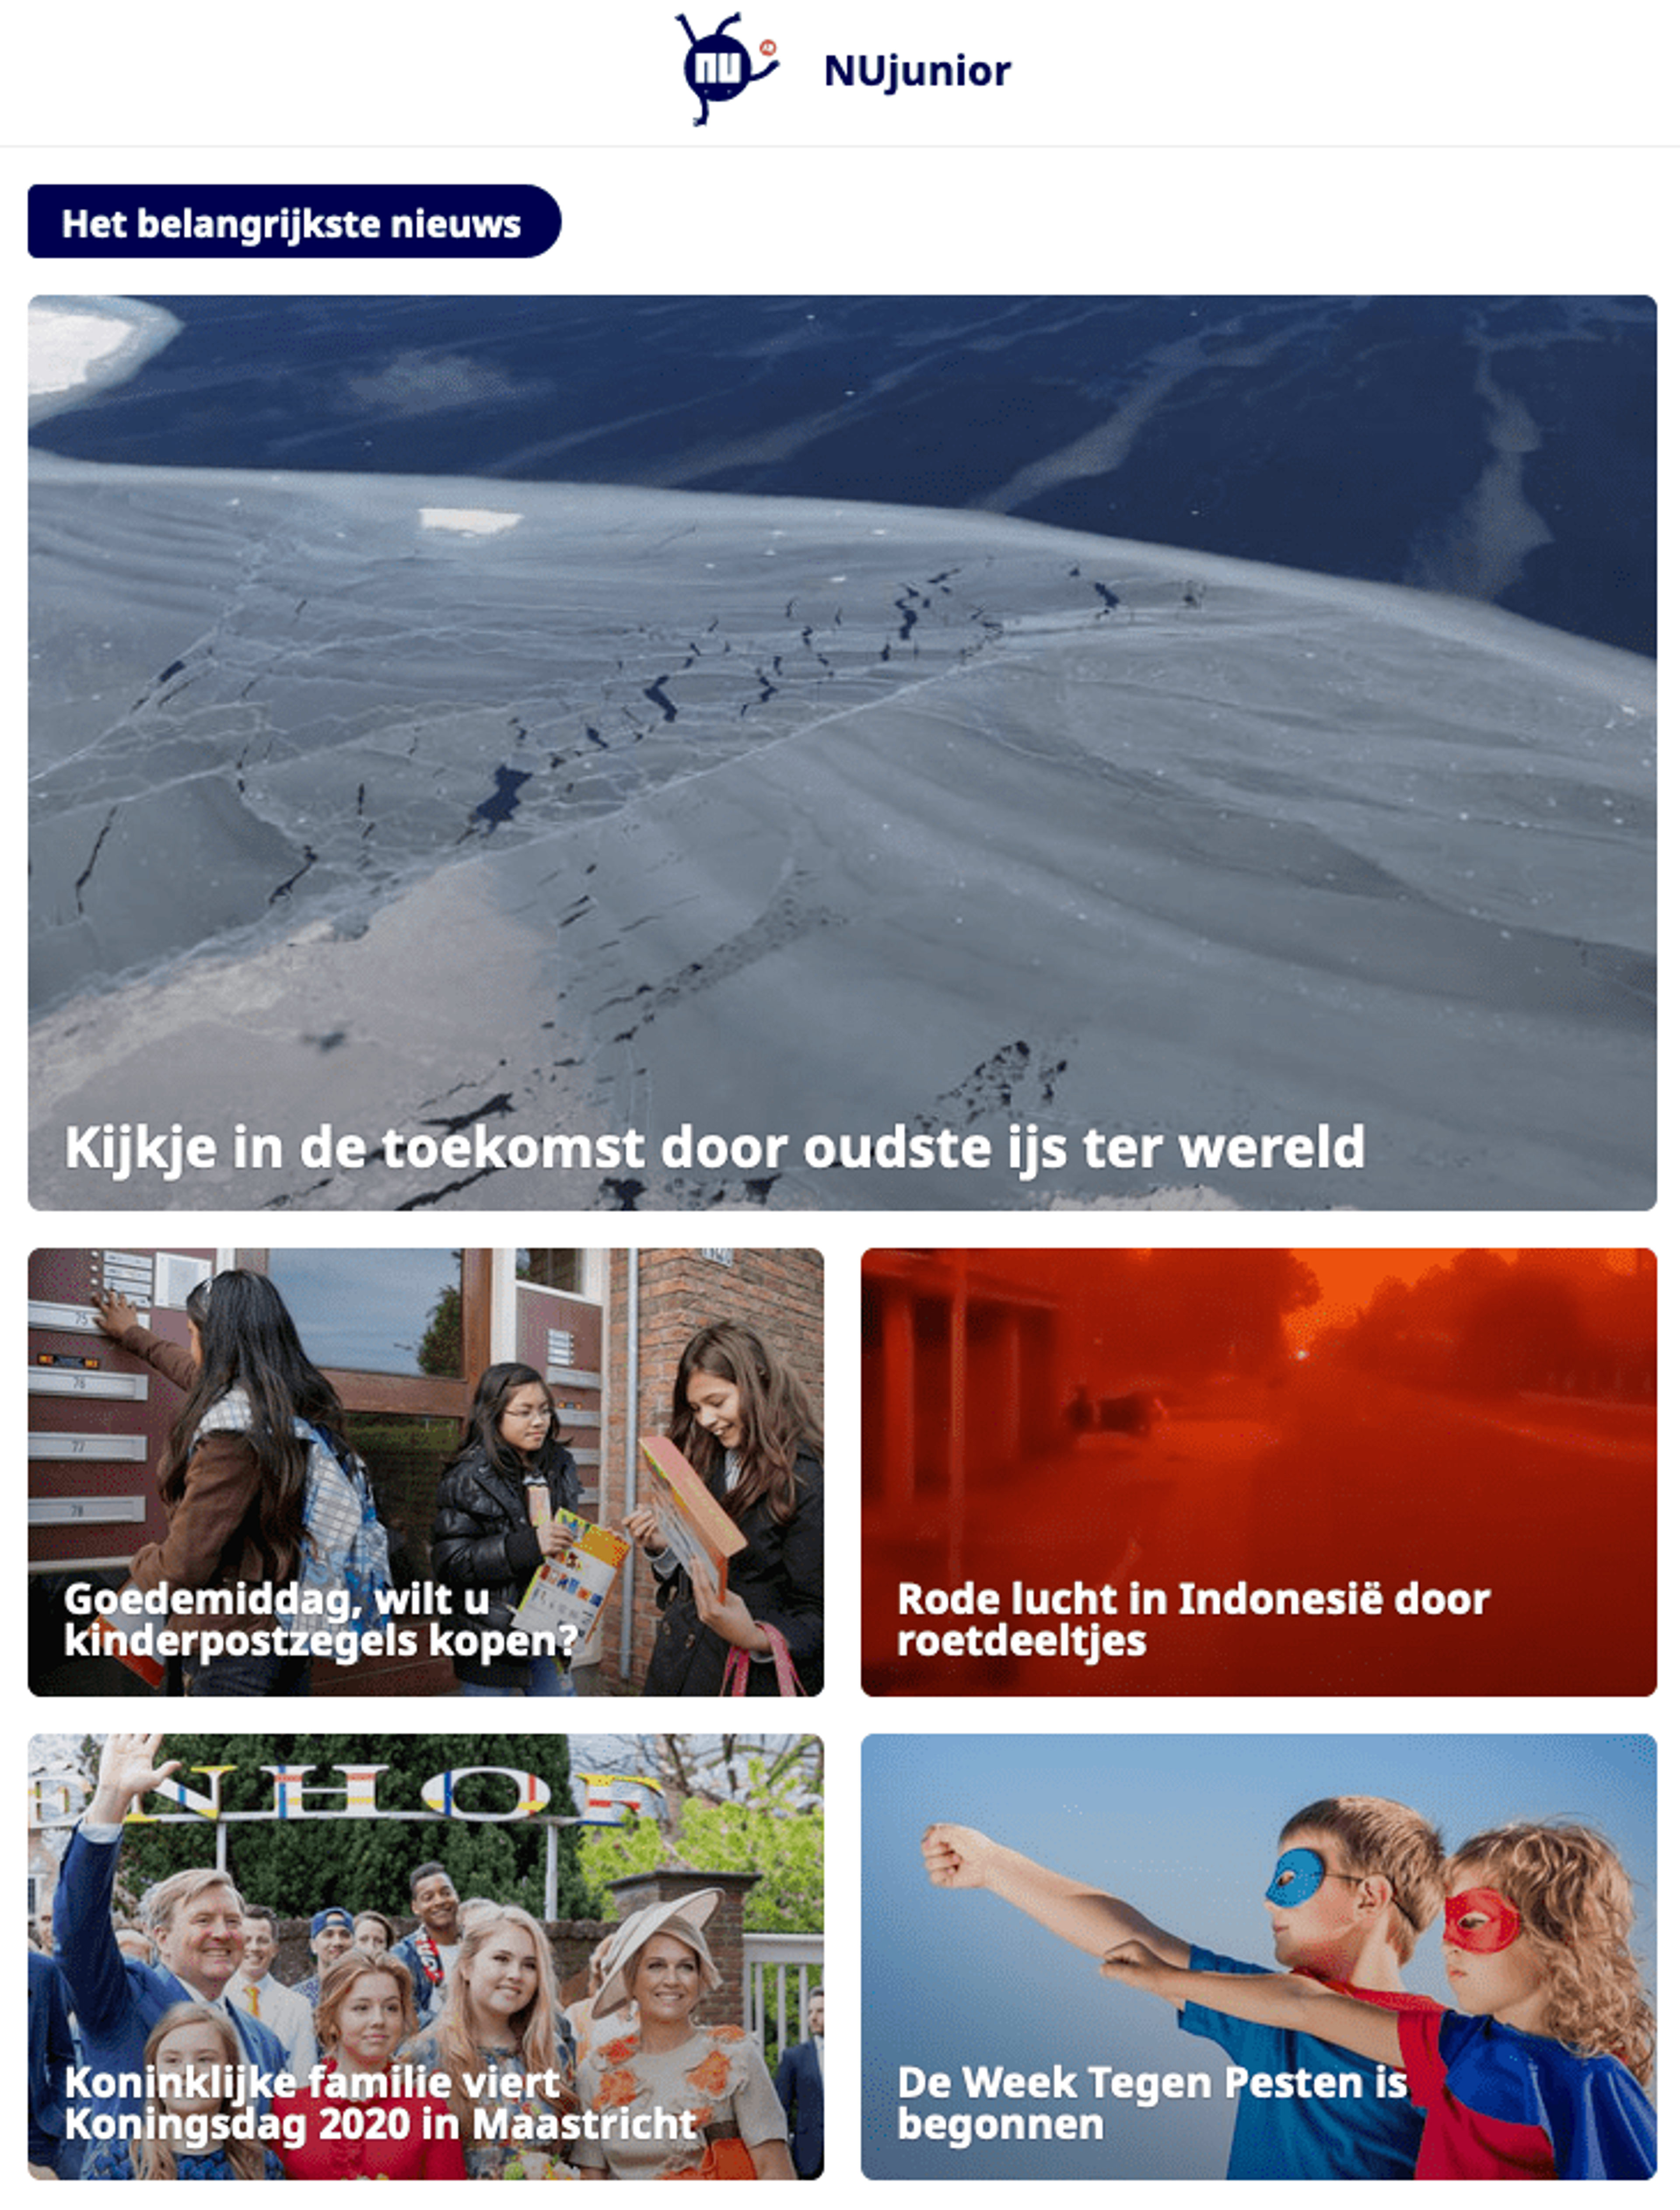 Nujunior.nl, nieuwssite voor kinderen